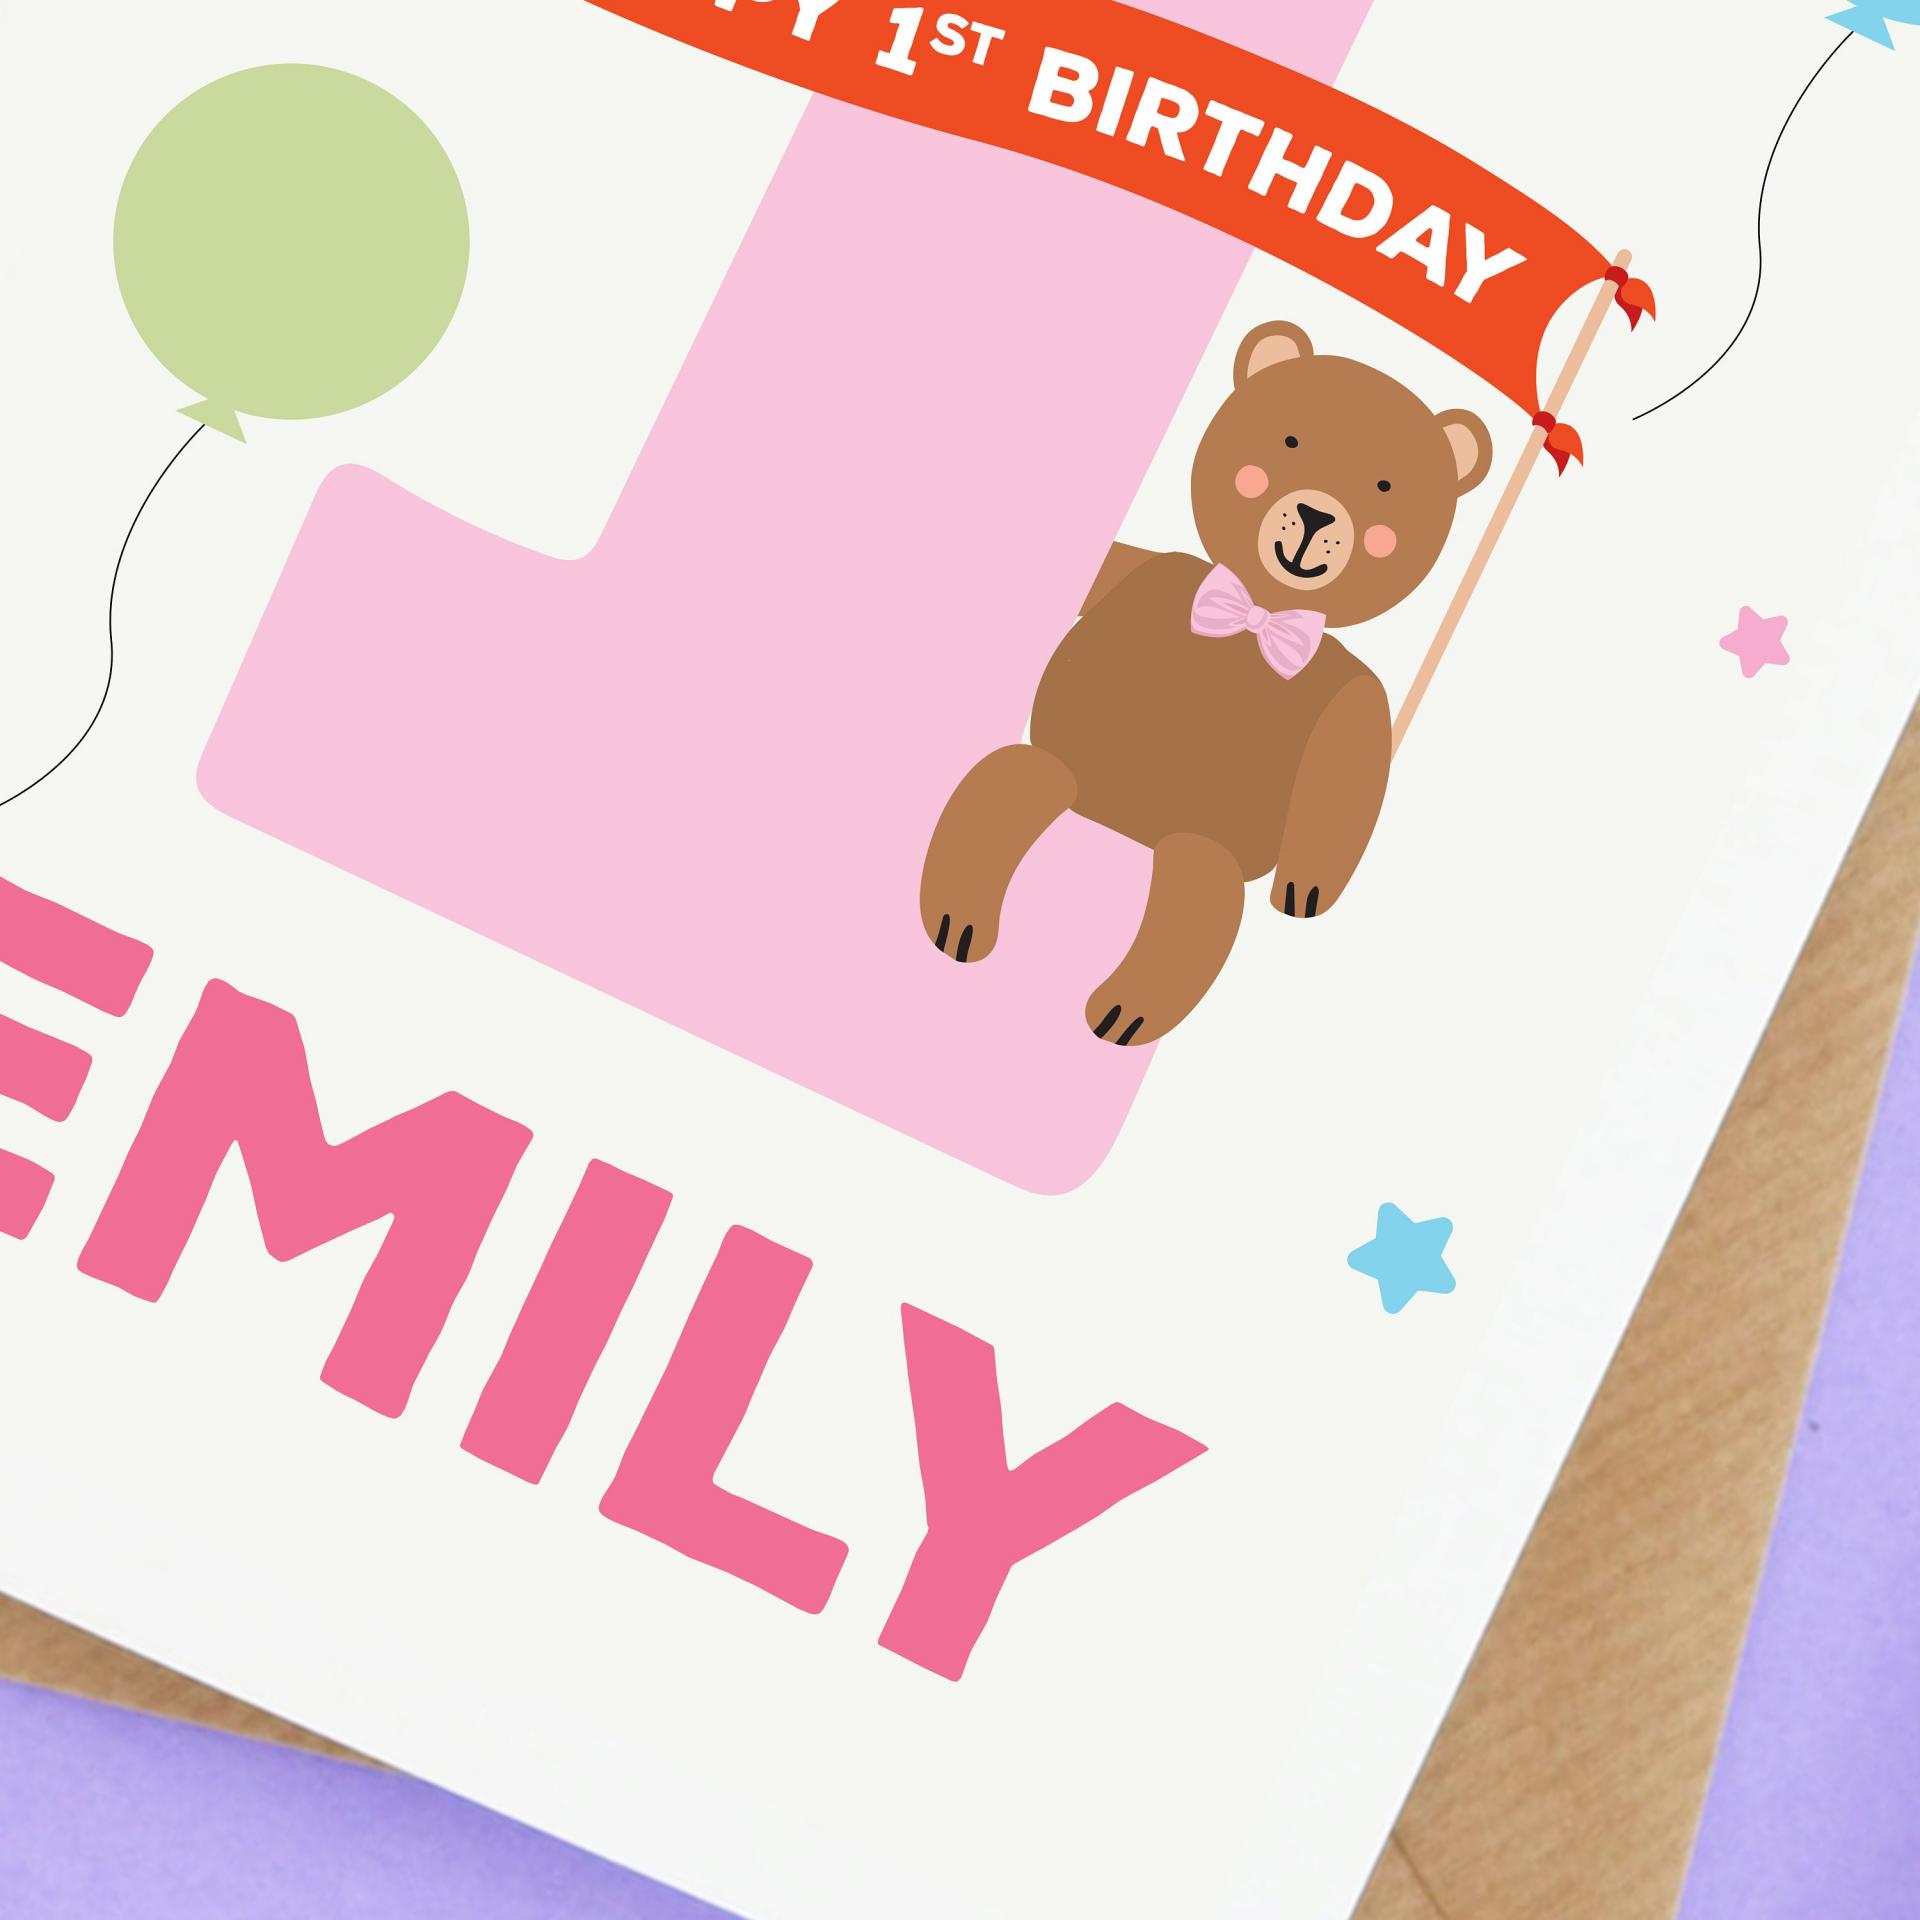 1st birthday girl card, Animal 1st birthday card, personalised girls 1st birthday card, First Birthday Card, cute animal card, birthday bear